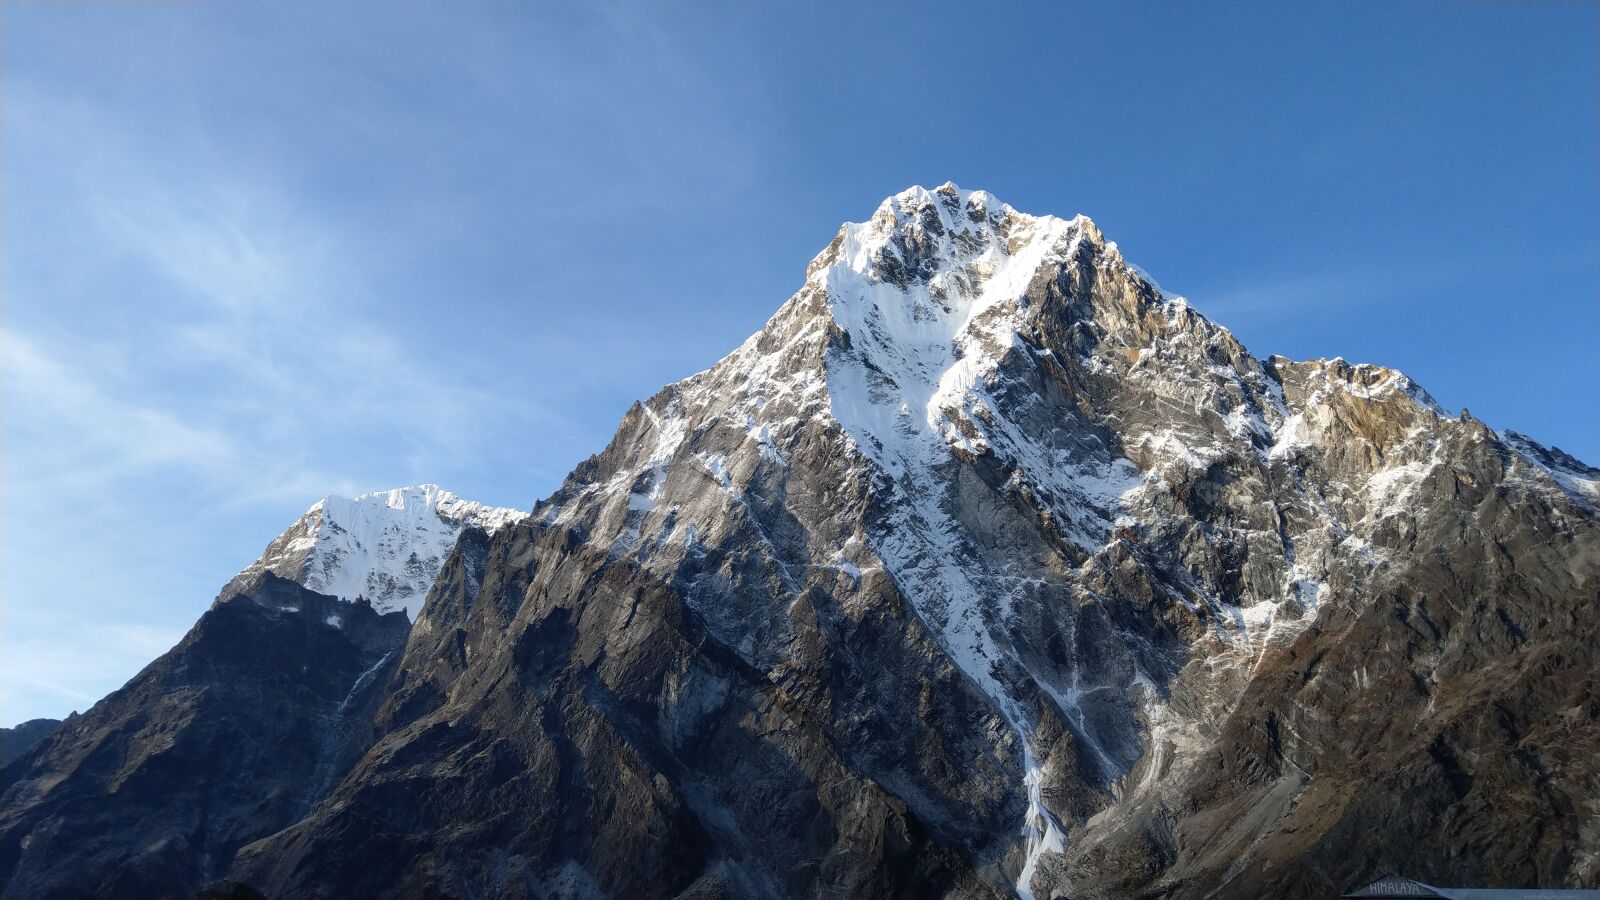 HTC U11 sample photo. Cholatse, nepal, mountain photography